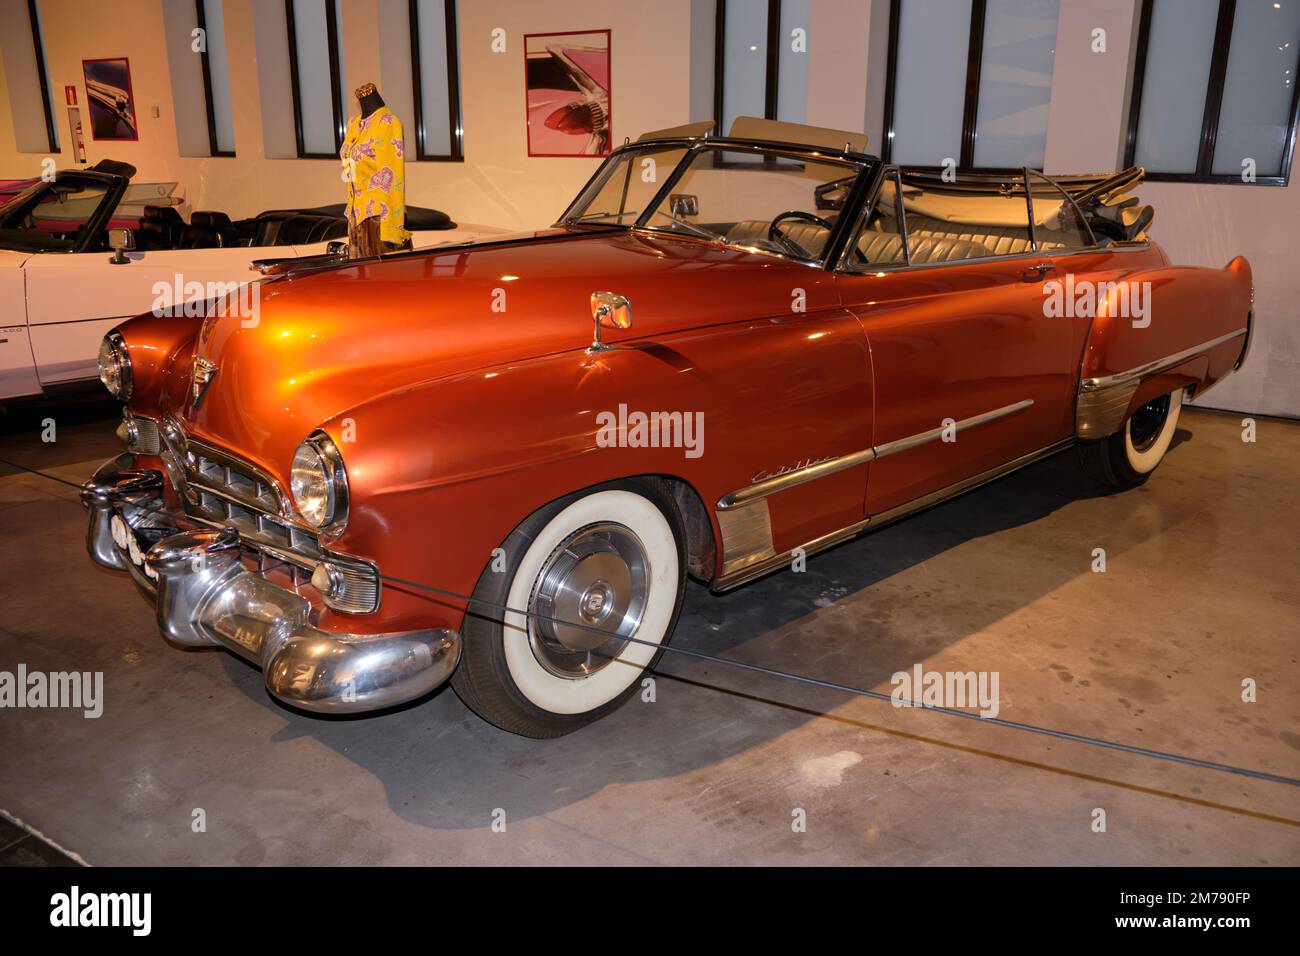 1954 Cadillac au musée de l'automobile de Málaga, Espagne. Banque D'Images